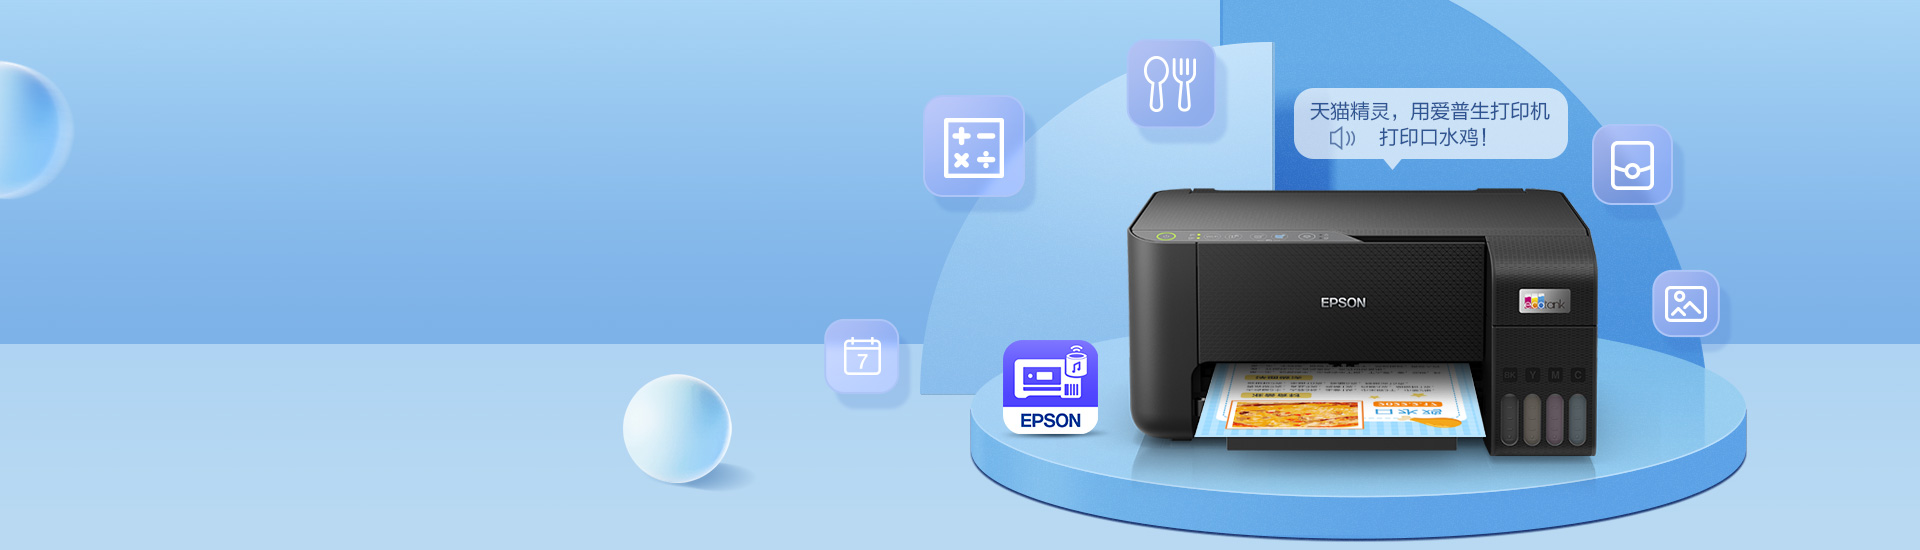 EPSON_wirelesssolution_printer_tmall